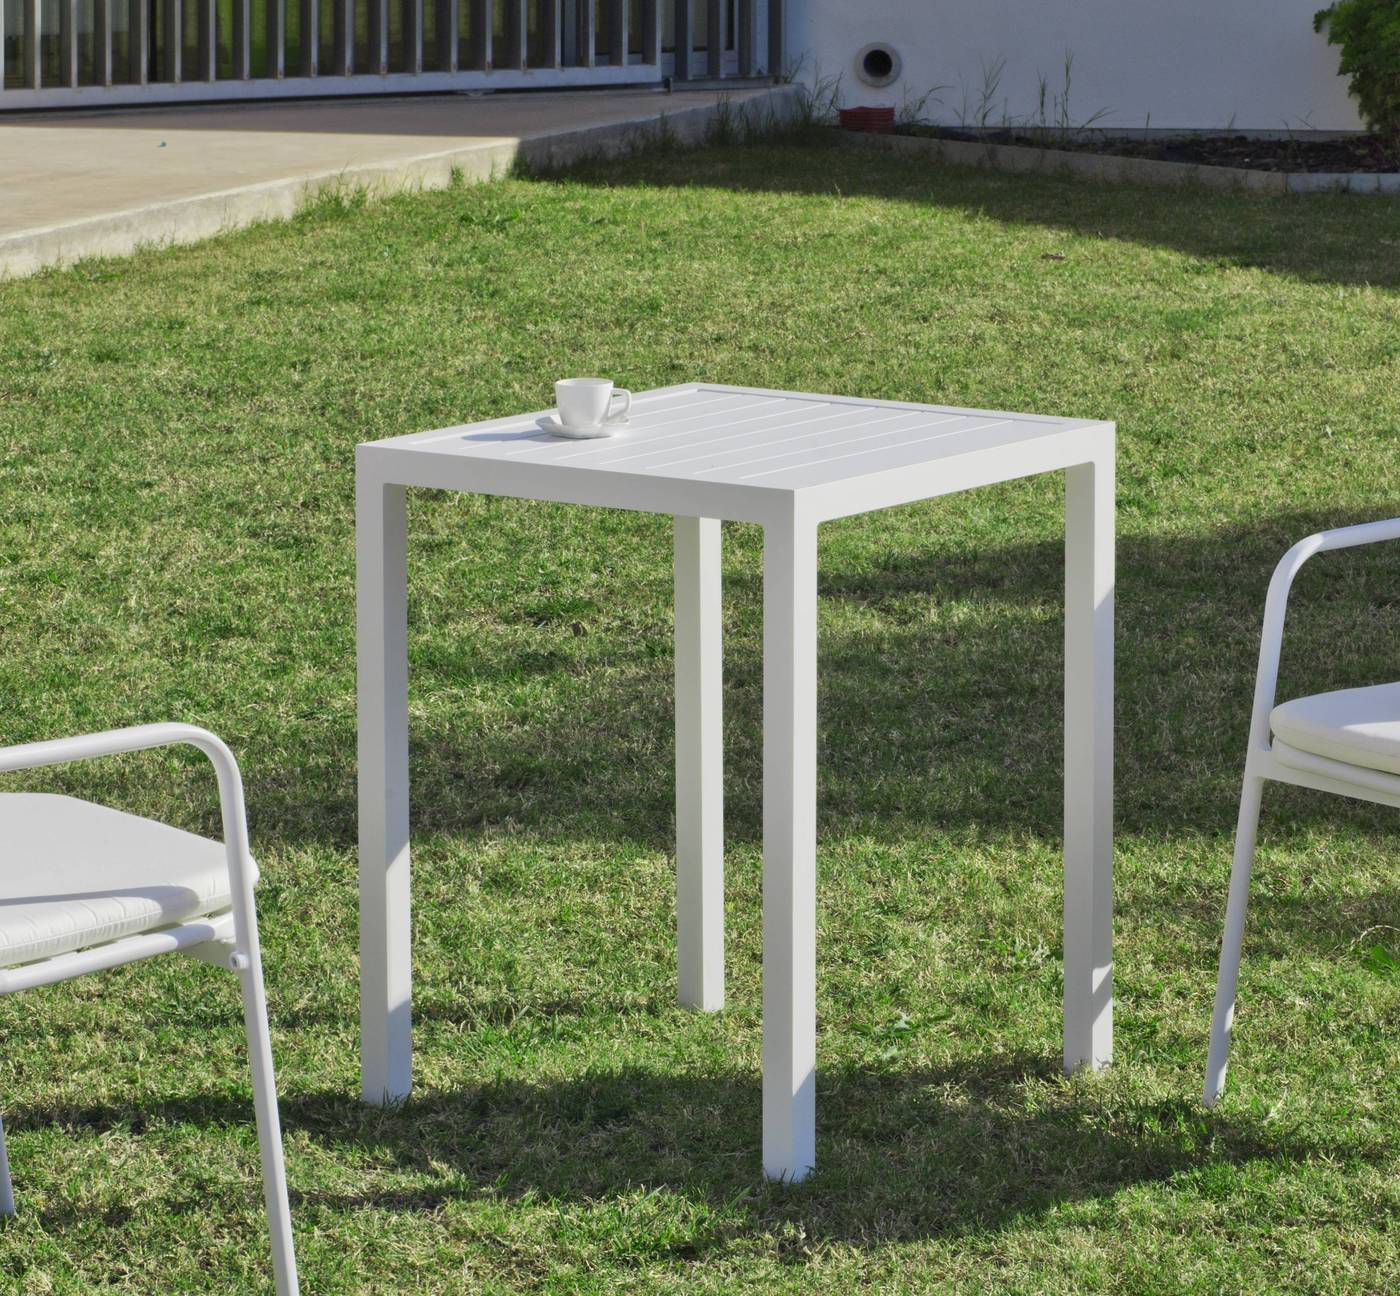 Set Aluminio Melea-Maxim 65-2 - Conjunto apilable de aluminio luxe: mesa cuadrada de 65 cm. + 2 sillones. Disponible en color blanco y color antracita.